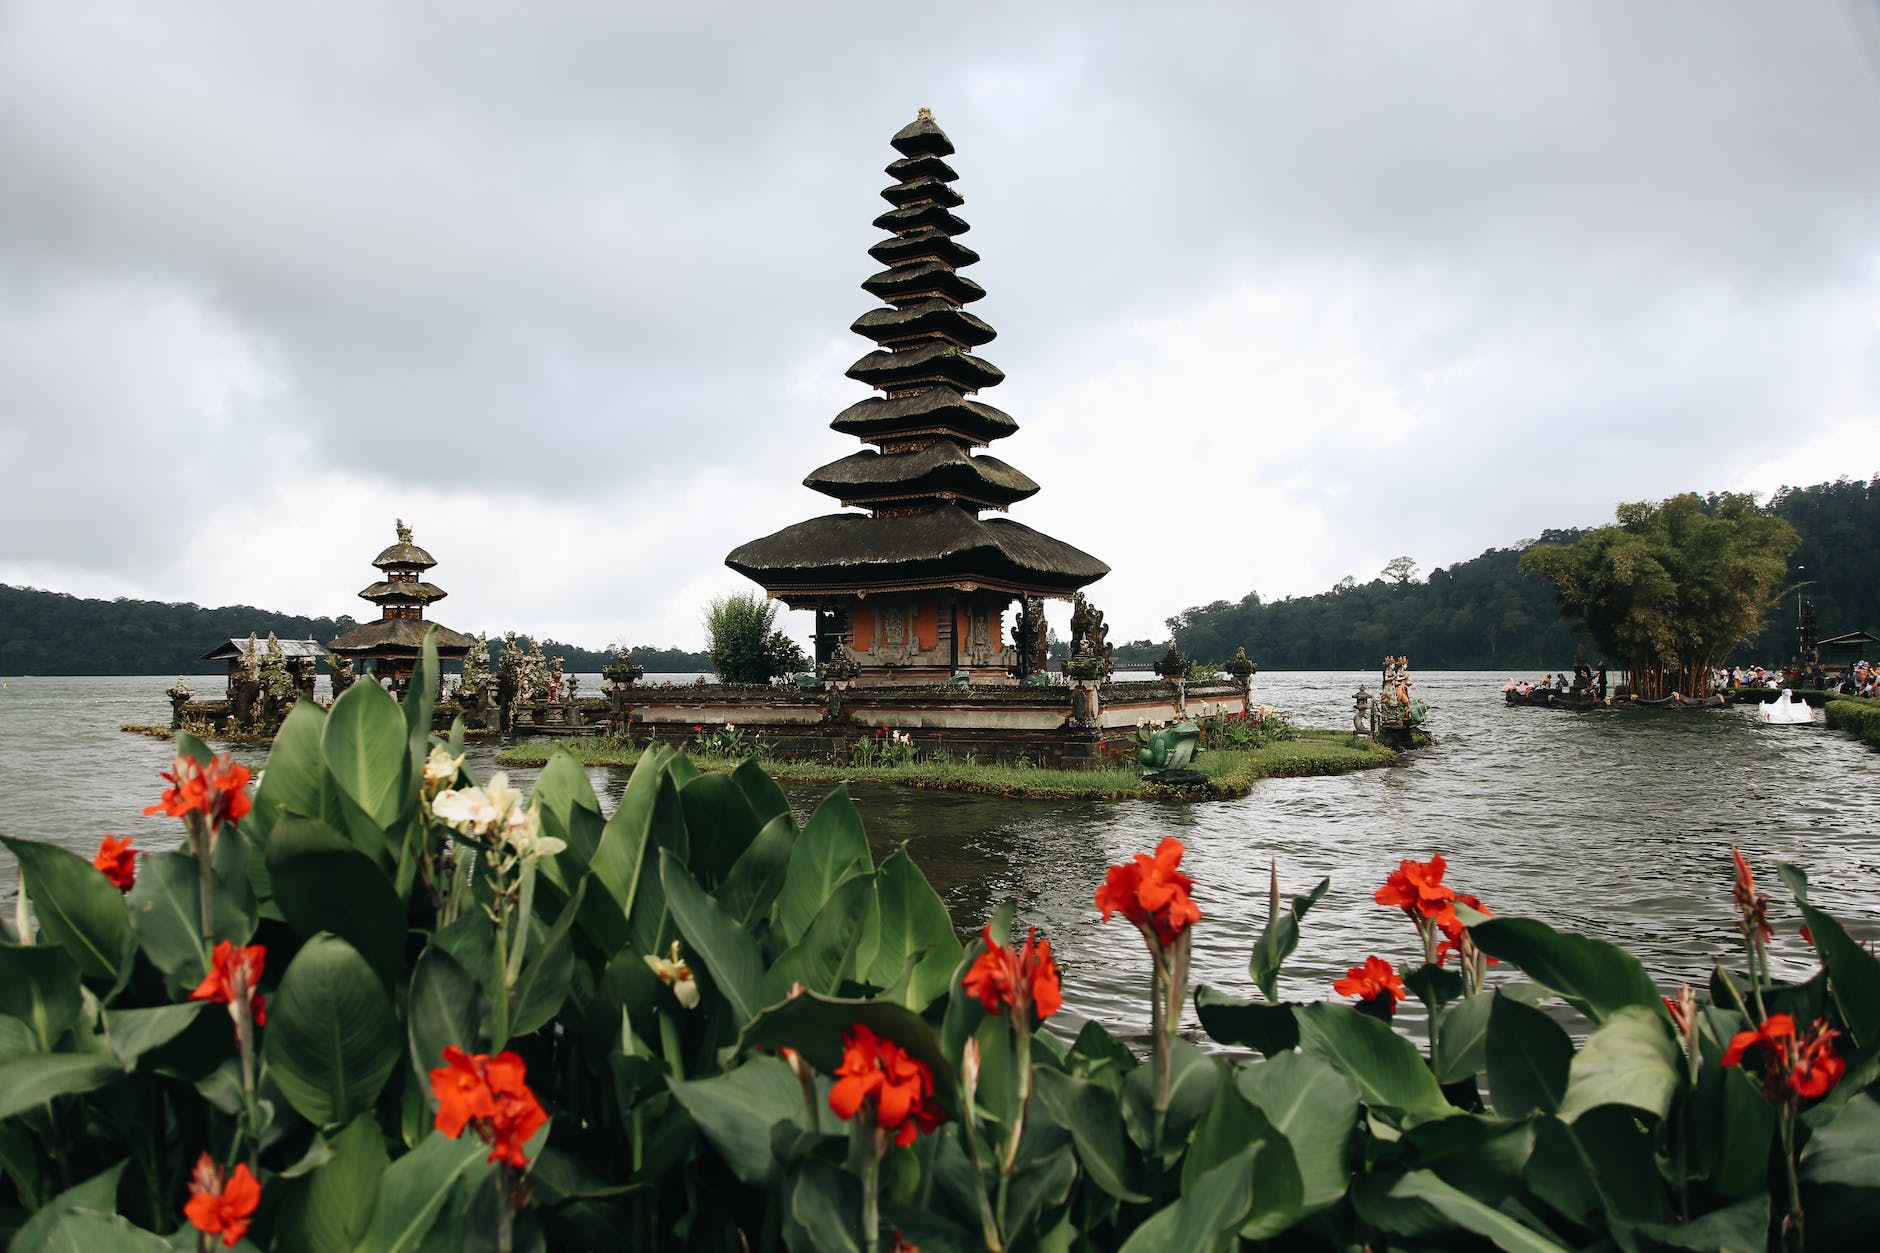 ulun danu beratan temple in indonesia